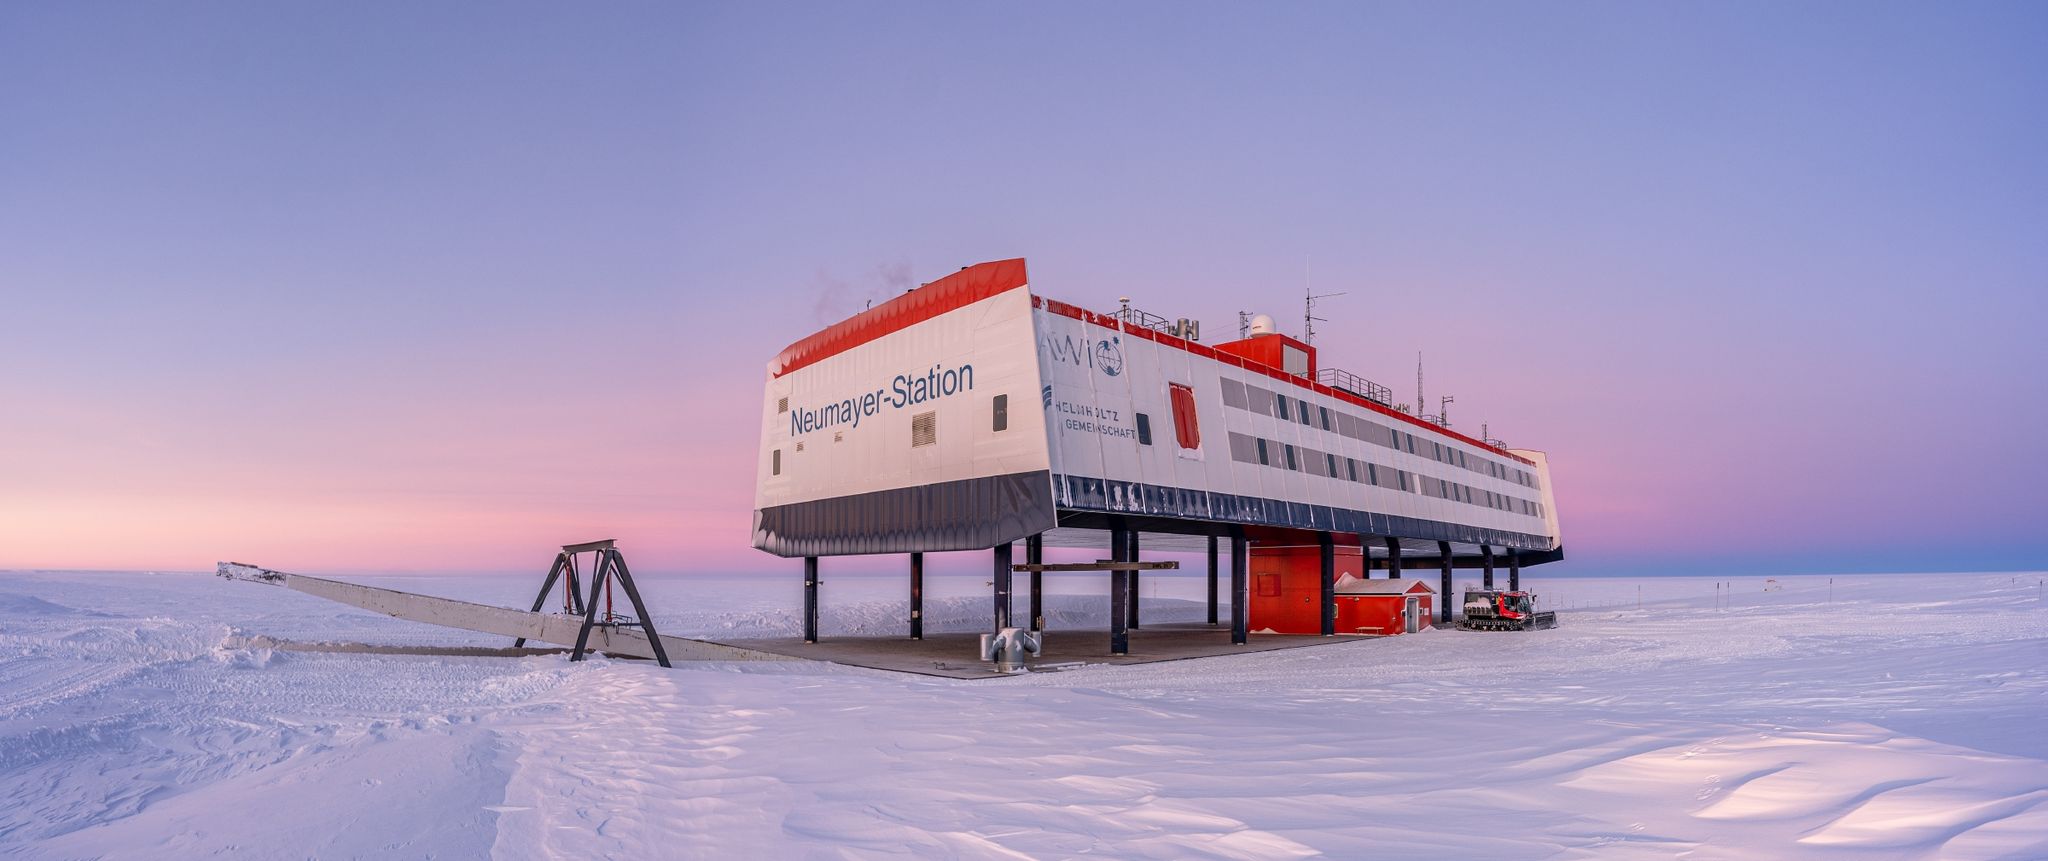 Fern von der Heimat wird auch in der Forschungsstation Neumayer III in der Antarktis Weihnachten gefeiert.